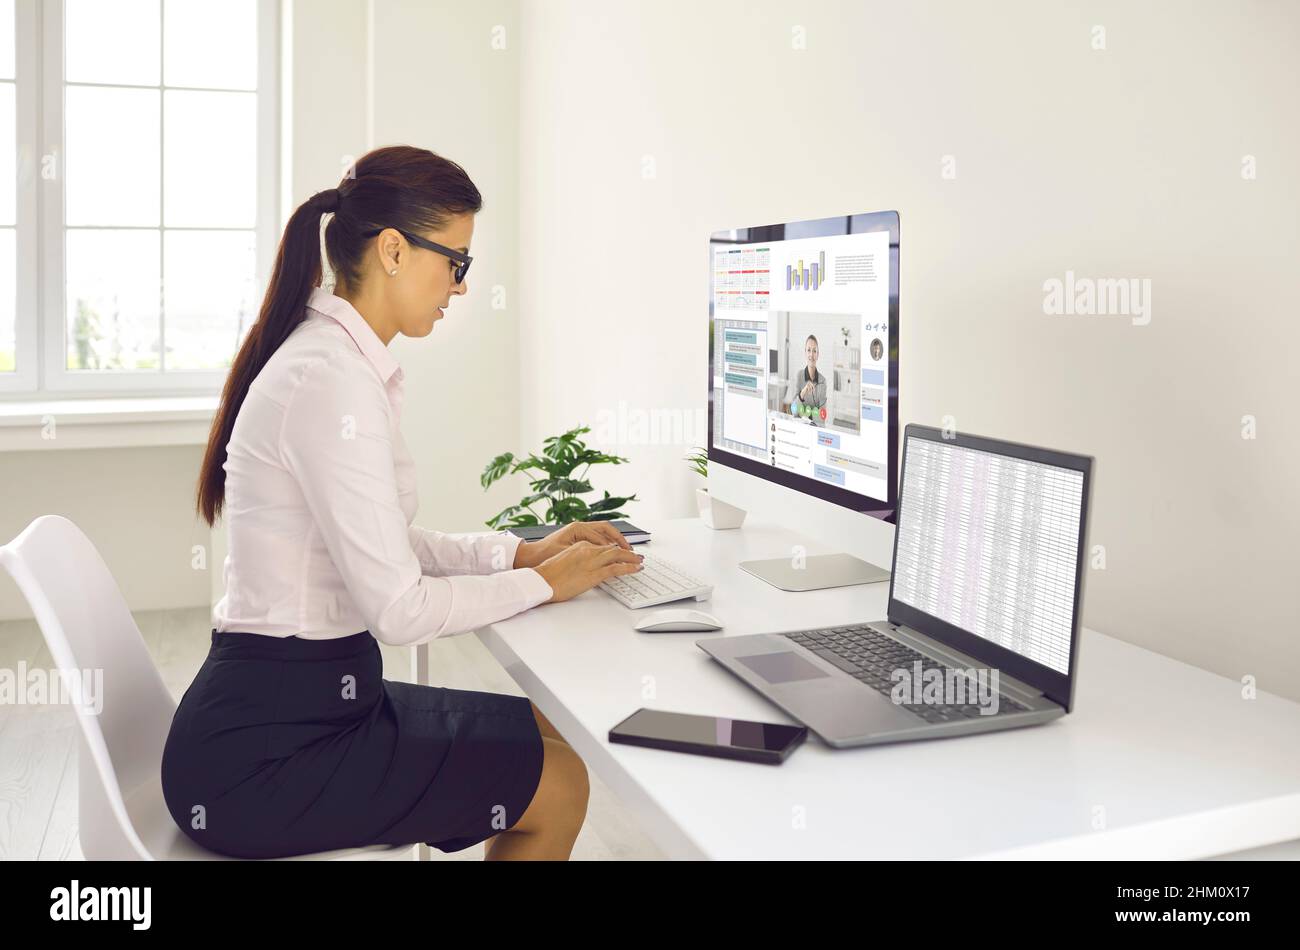 Junge Frau, die am Schreibtisch sitzt, mehrere Computer nutzt und im Arbeitschat Nachrichten mitgibt Stockfoto